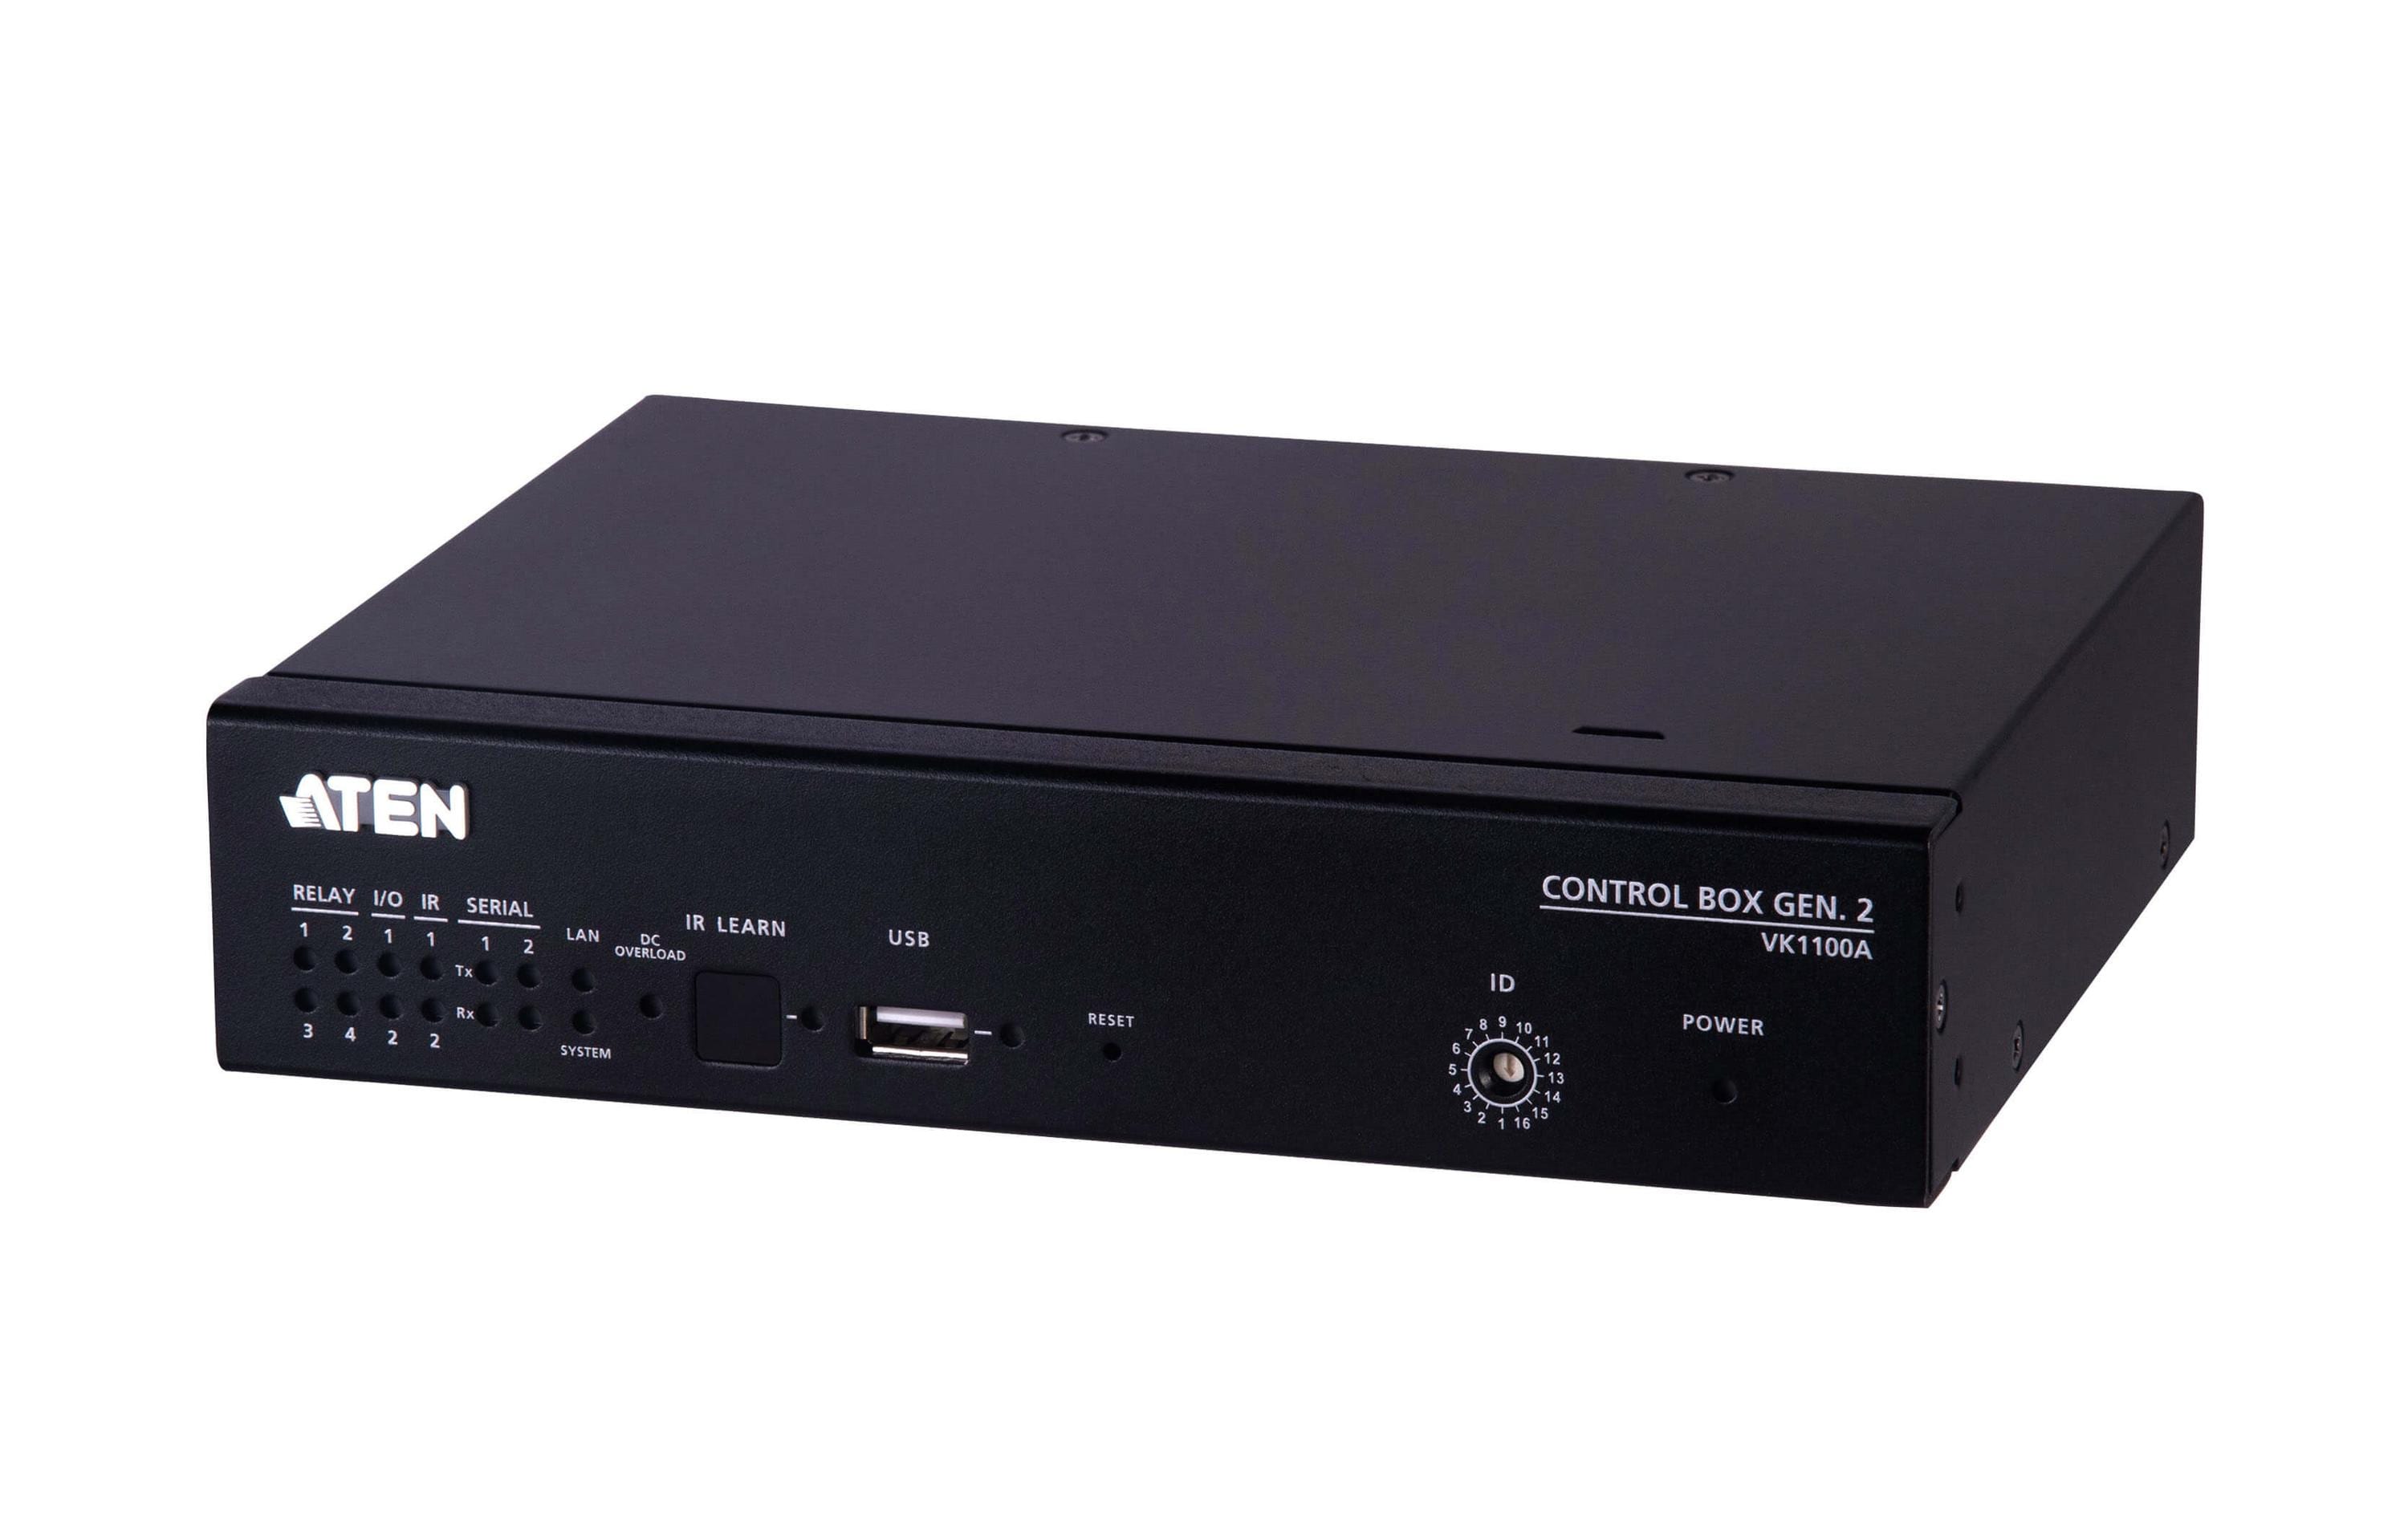 Aten VK1100A Compact Control Box Gen. 2